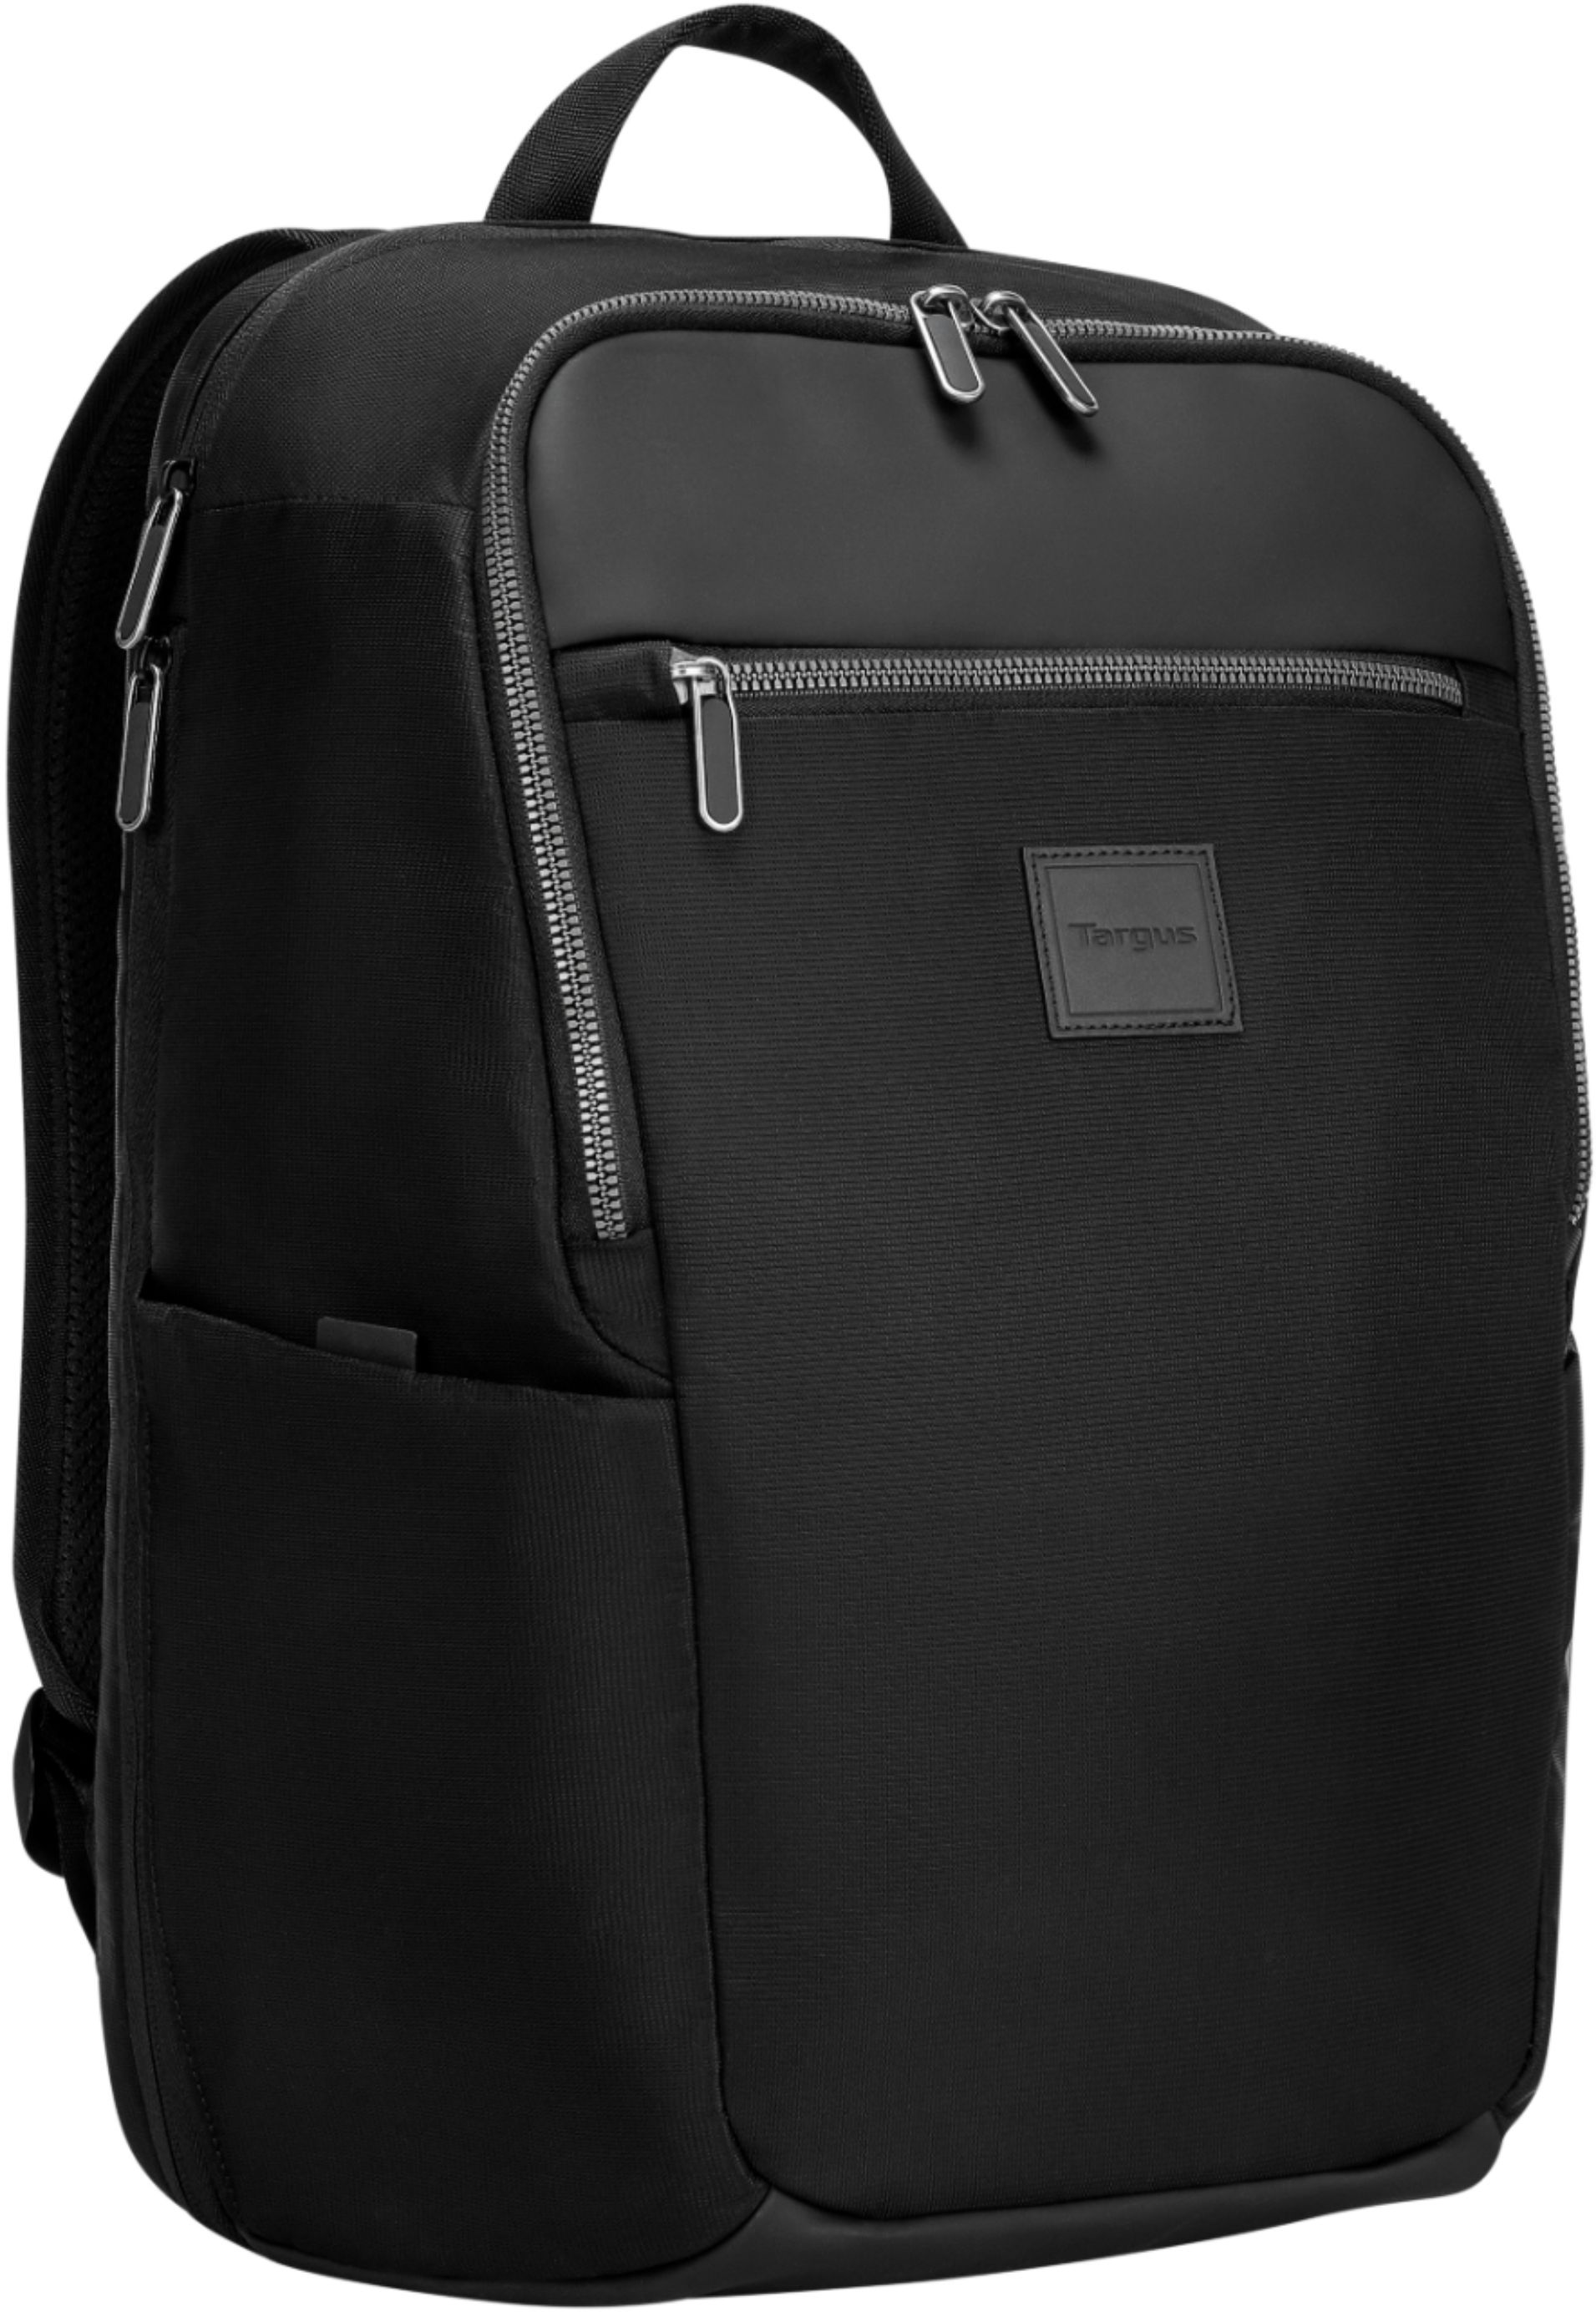 Targus Urban Expandable Backpack for 15.6” Laptops Black TBB596GL ...